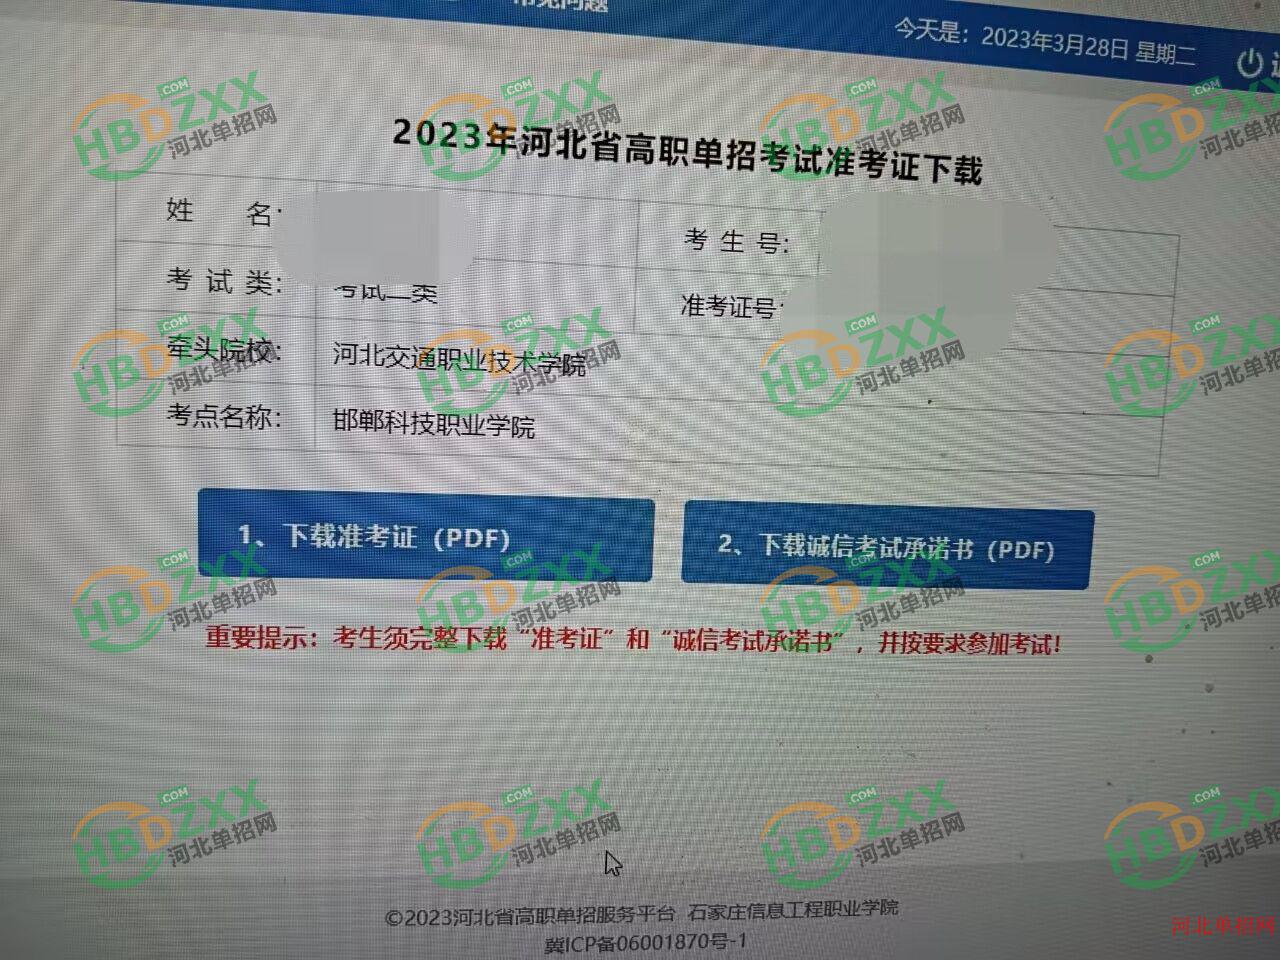 2023年河北省高职单招准考证打印流程图 图4